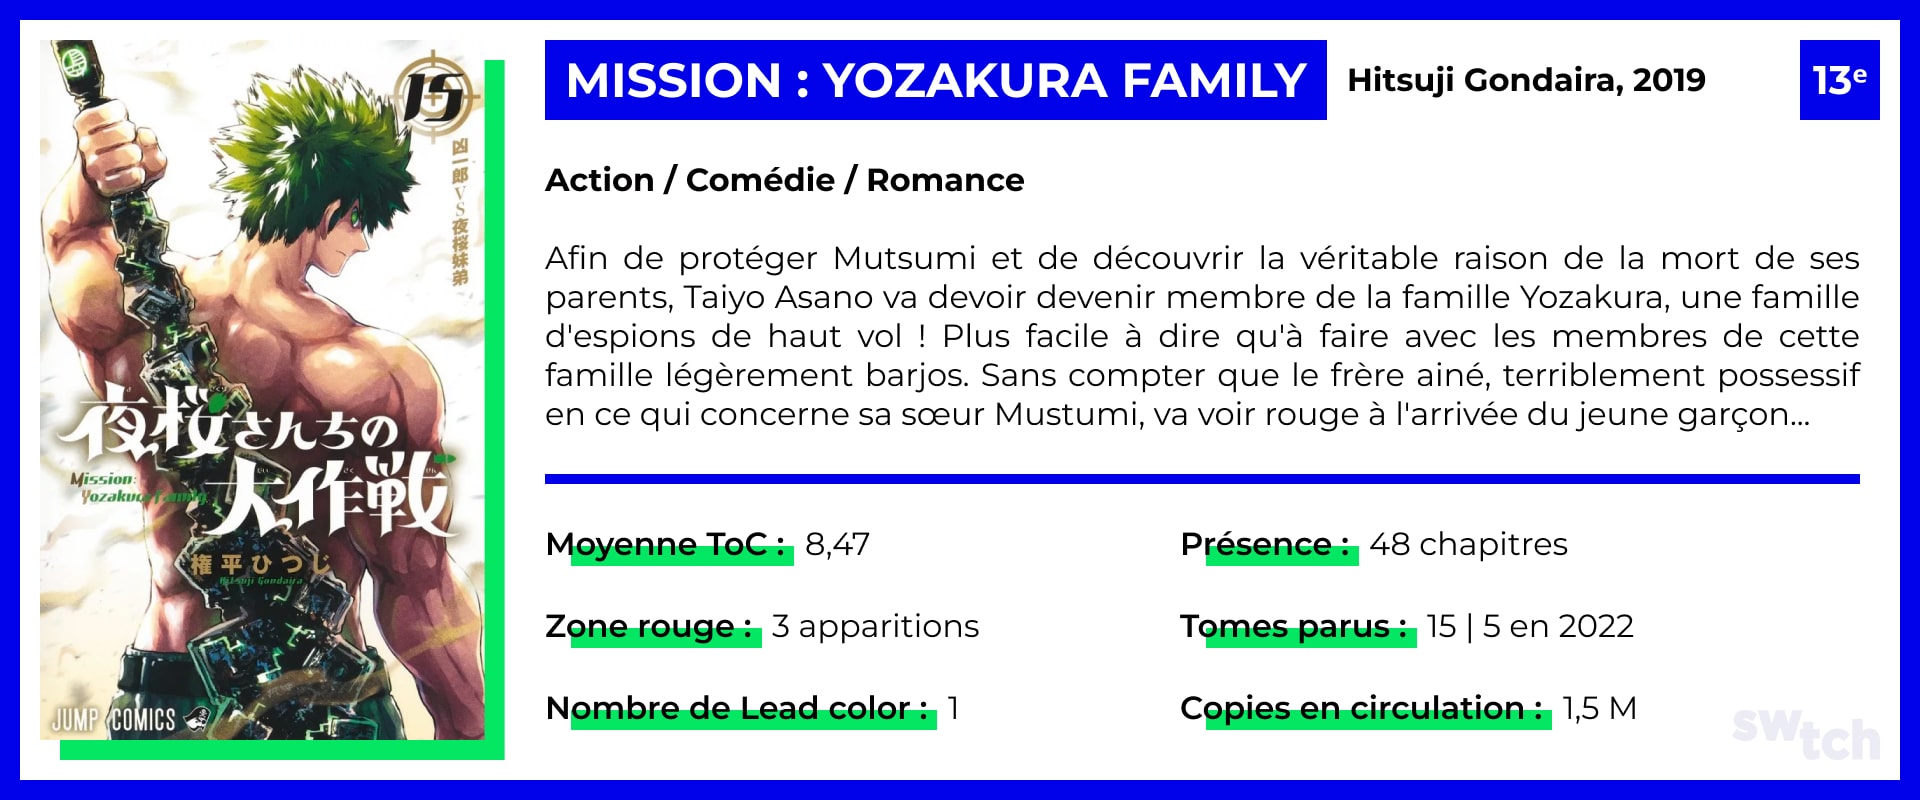 Mission : Yozakura Family